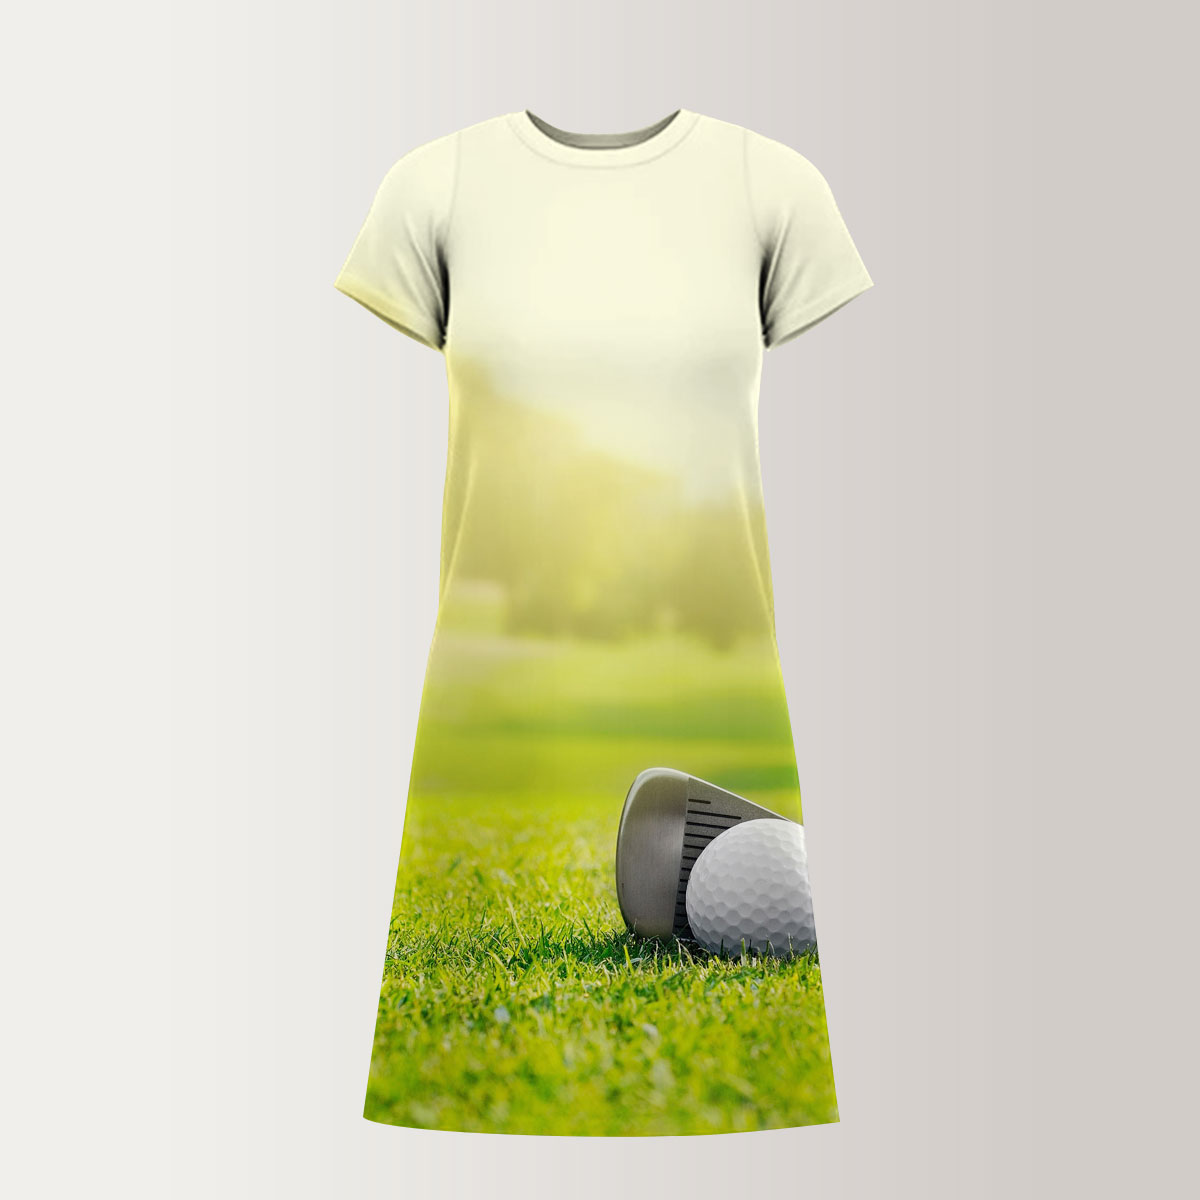 Golf Tools On Grass T-Shirt Dress